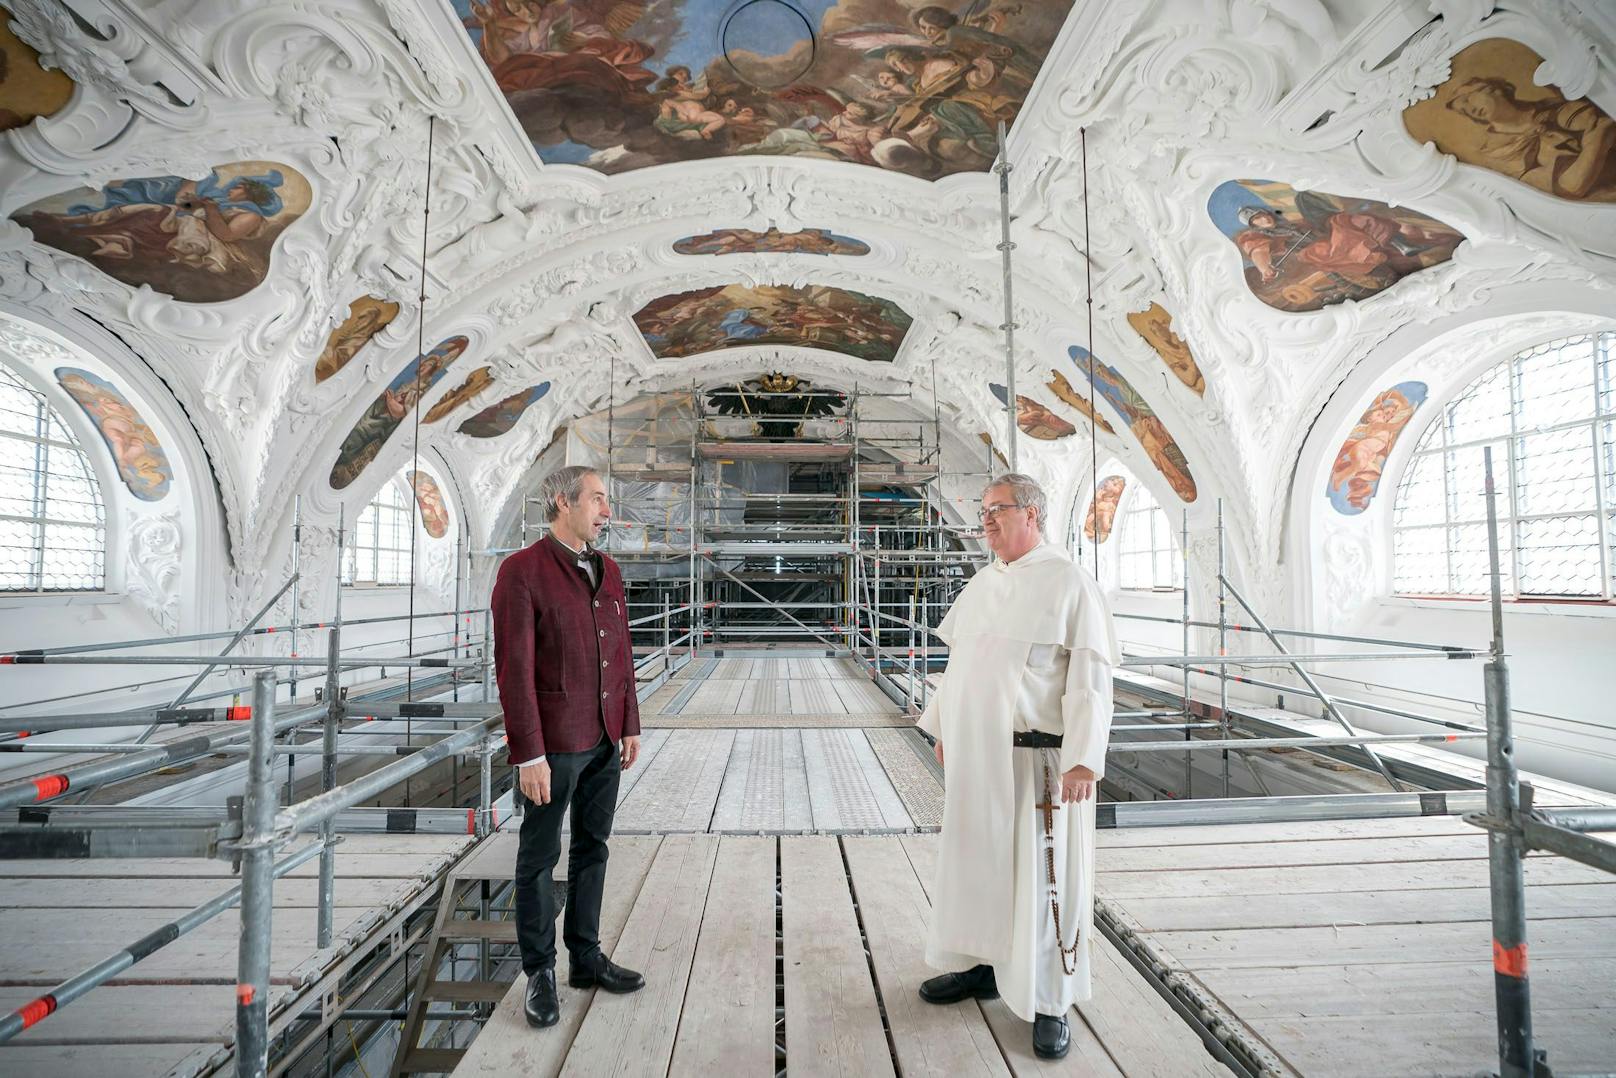 Dazu wurde im Innenraum der Kirche ein 26 Meter hohes Gerüst aufgebaut. "Von hier aus werden Schäden repariert und die prachtvollen Fresken restauriert", erklären der Architekt der Erzdiözese Wien Harald Gnilsen (l.) und Prior Günter Reitzi.